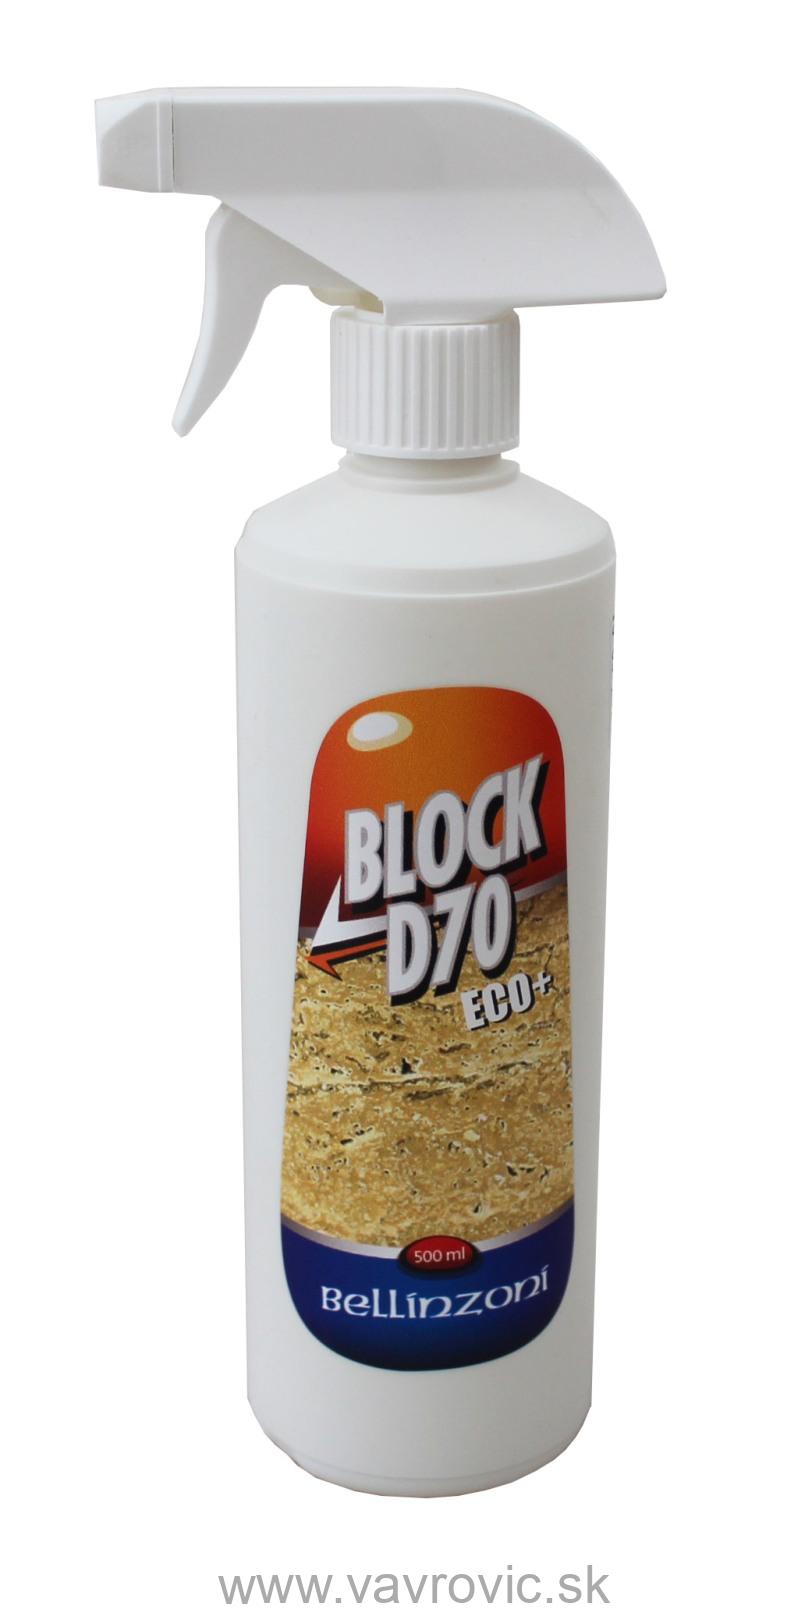 Bellinzoni - Block D70 / 500 ml